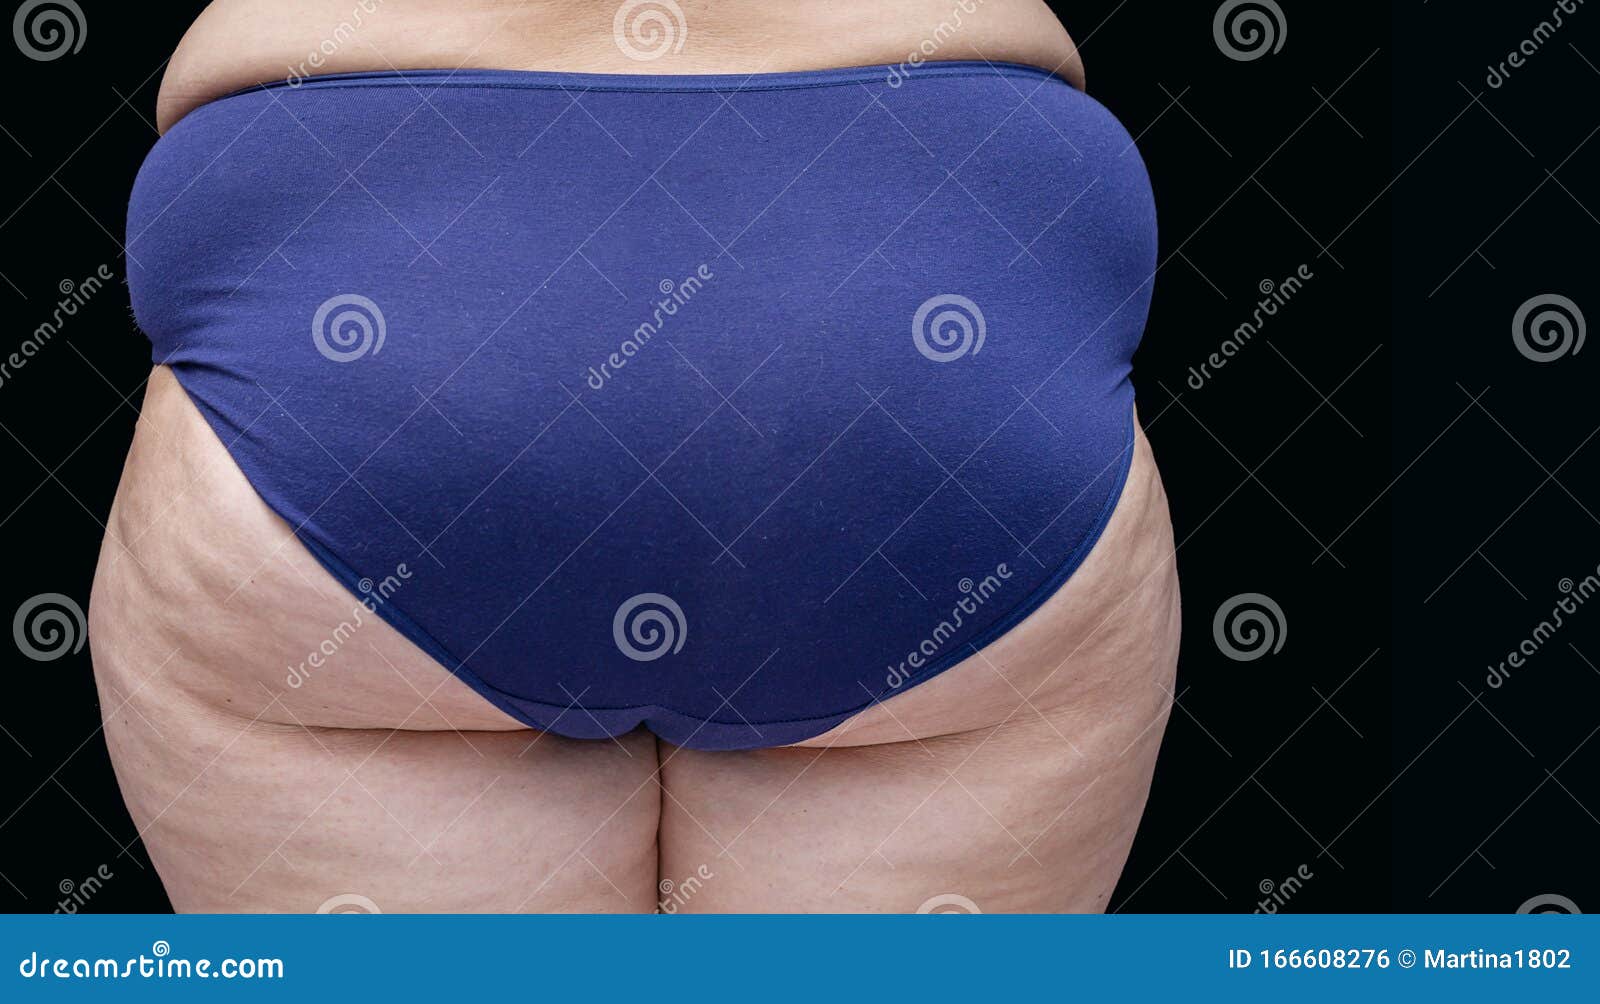 Girls With A Fat Ass